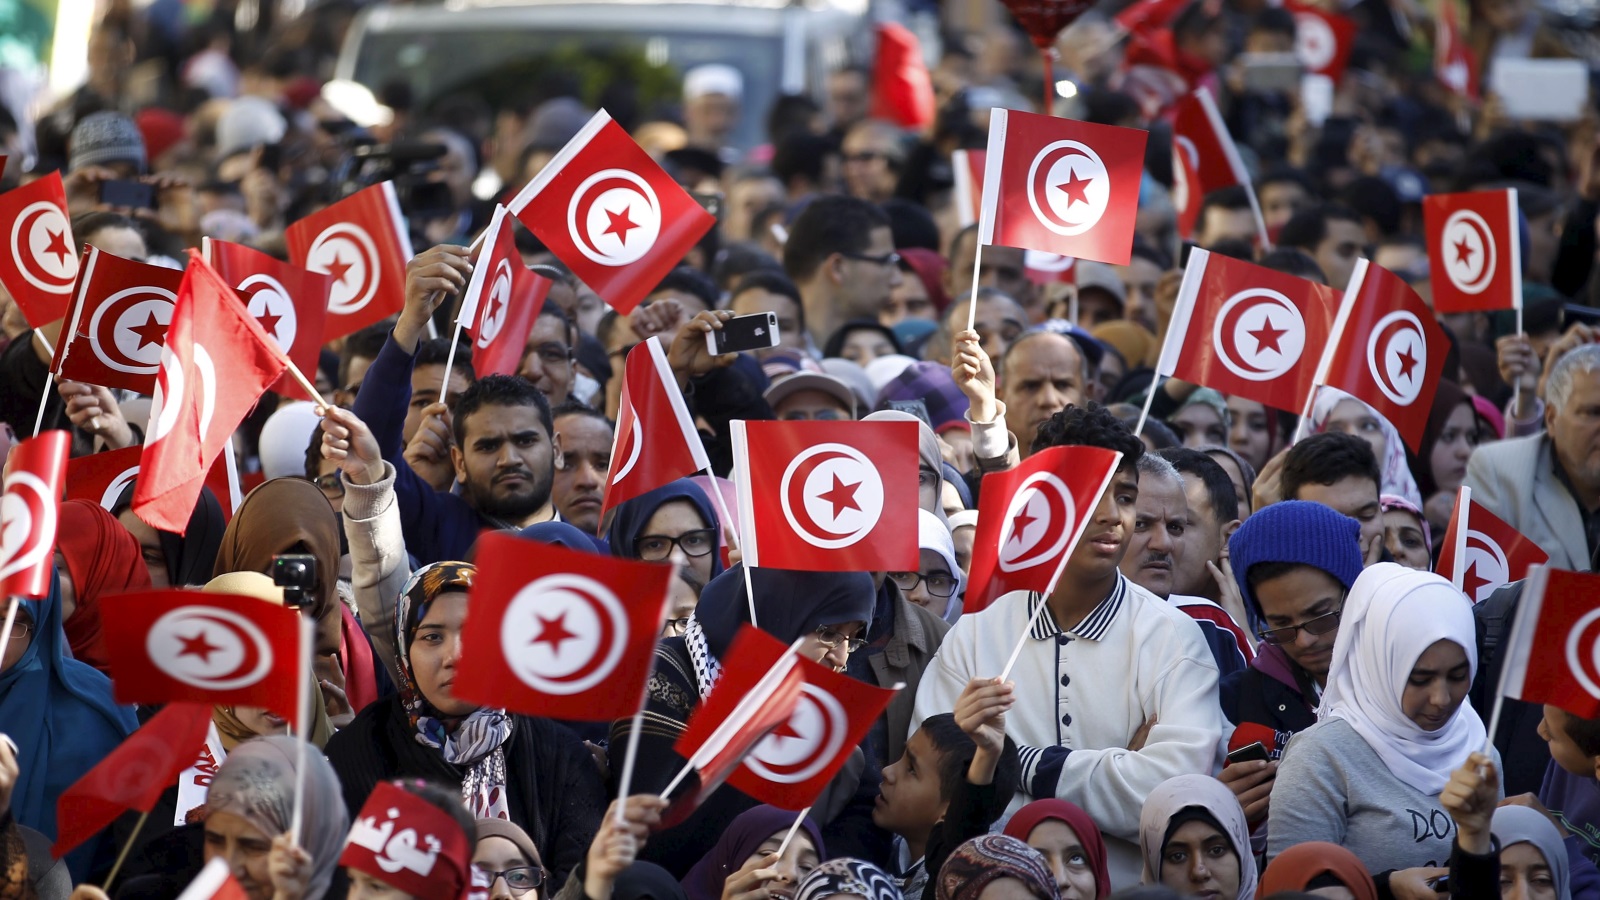 على الأقل في تونس يمكن لمواطنيها رفض أي قانون بأي طريقة كانت، بالتظاهر والكتابة والغناء والأشعار، ولن يسجن أحدهم لأنه عبّر عن رأيه!